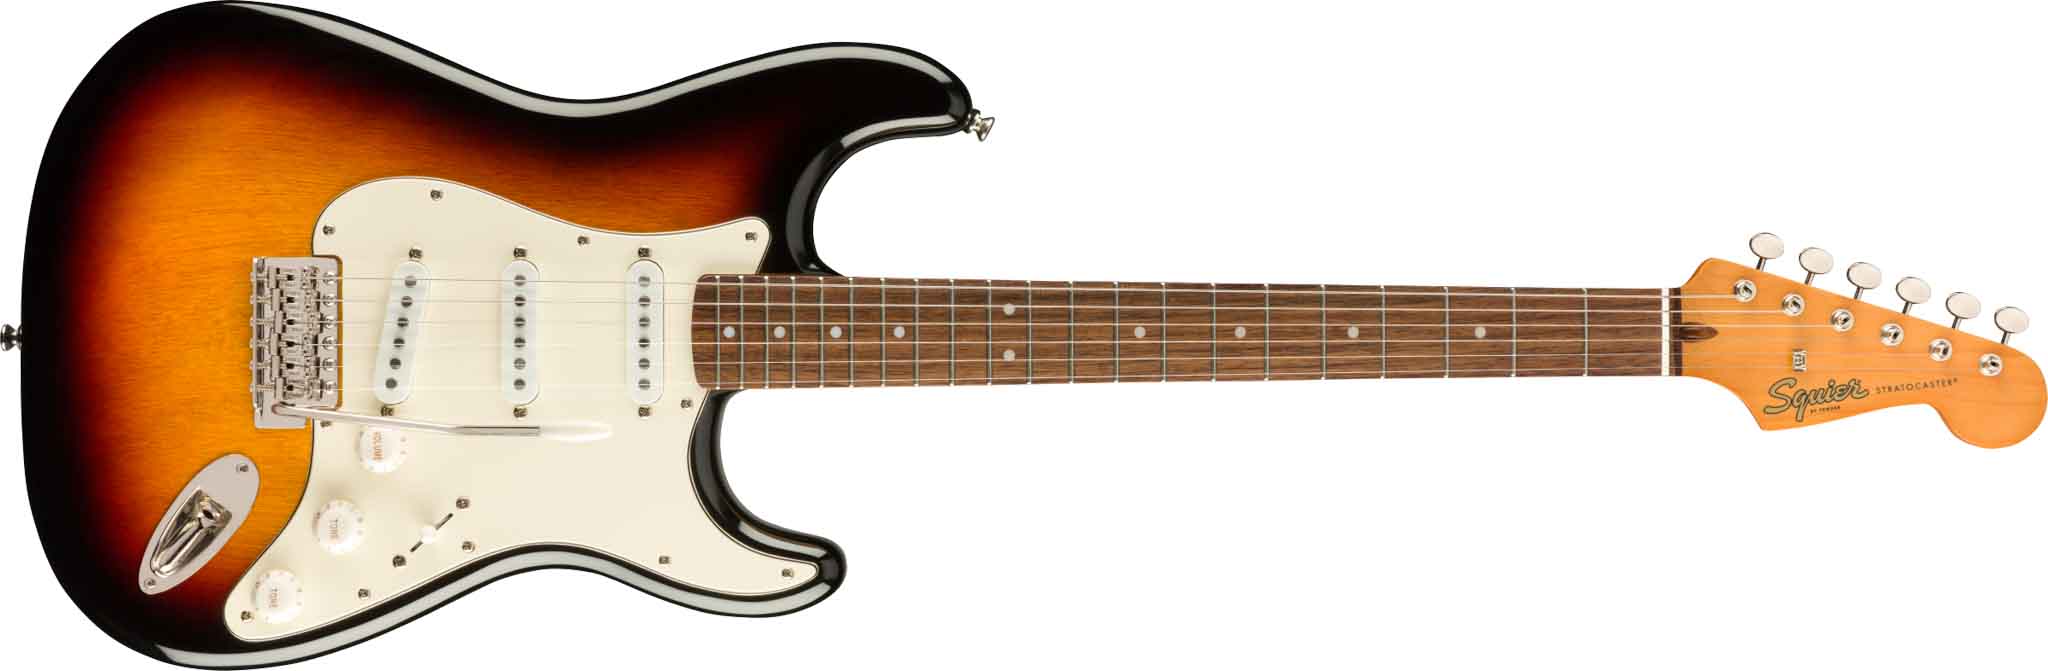 Fender Squier Classic Vibe '60s Stratocaster elektrisk gitar